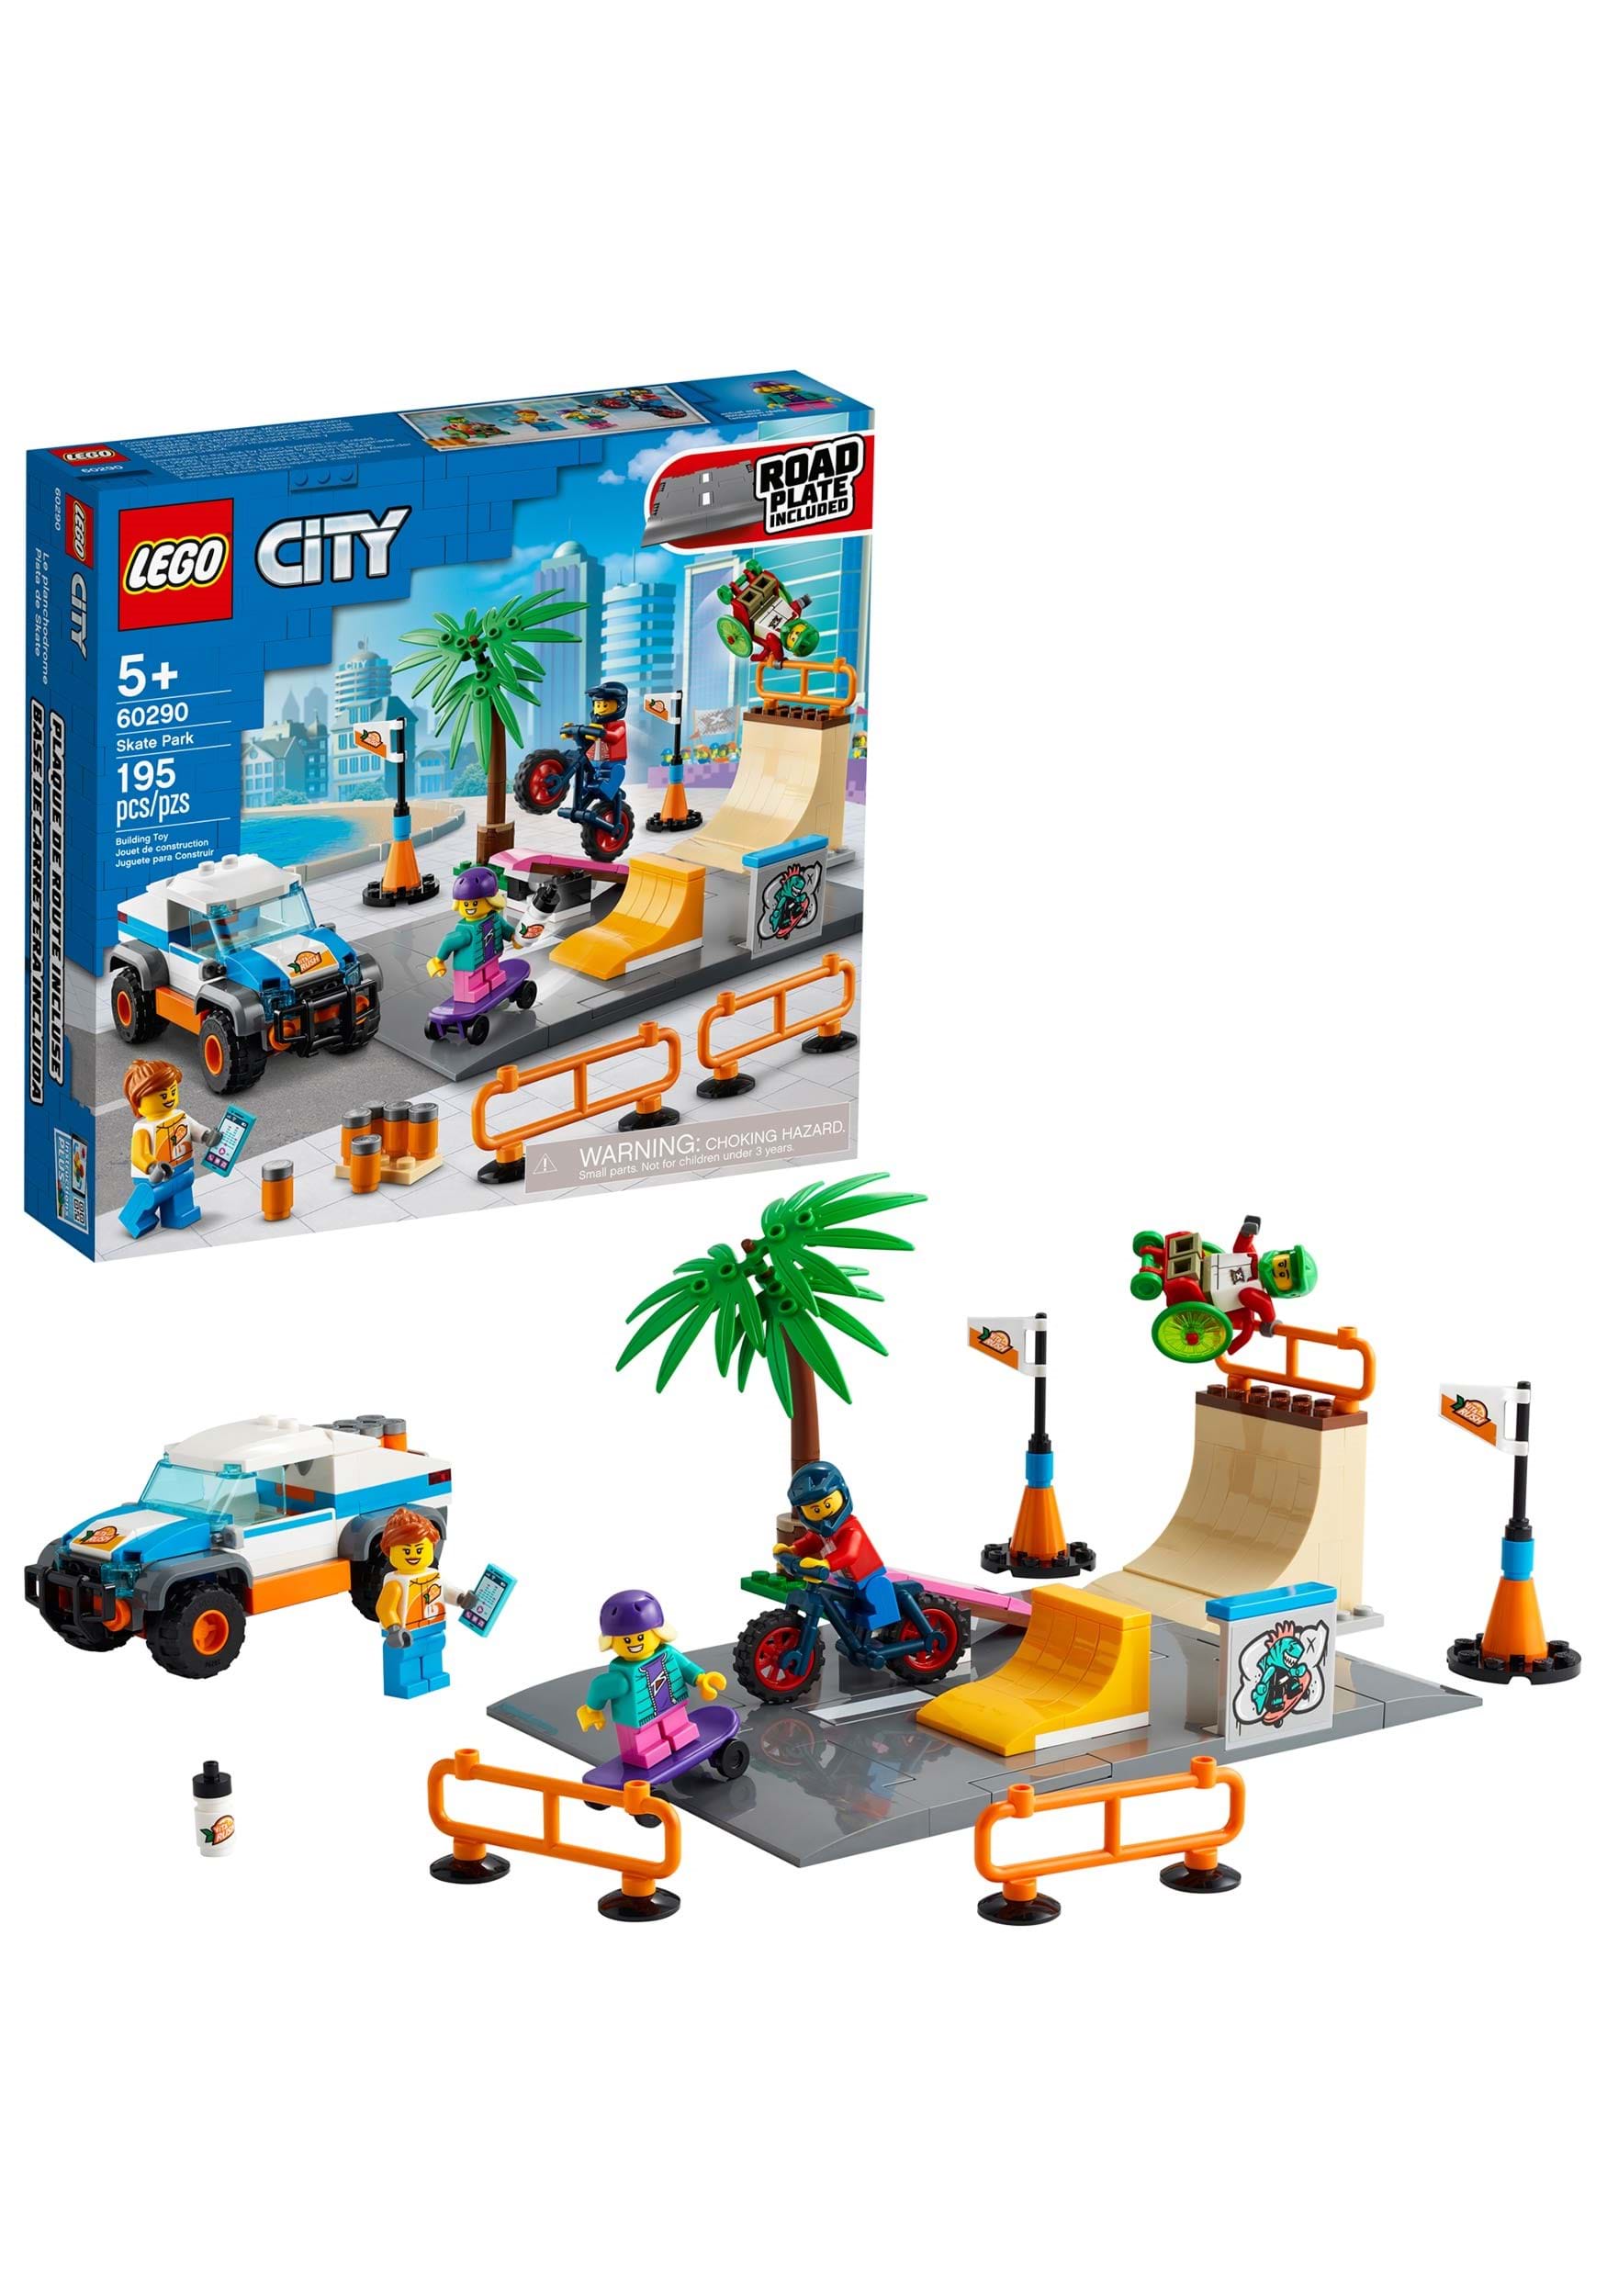 Skate Park LEGO City Set